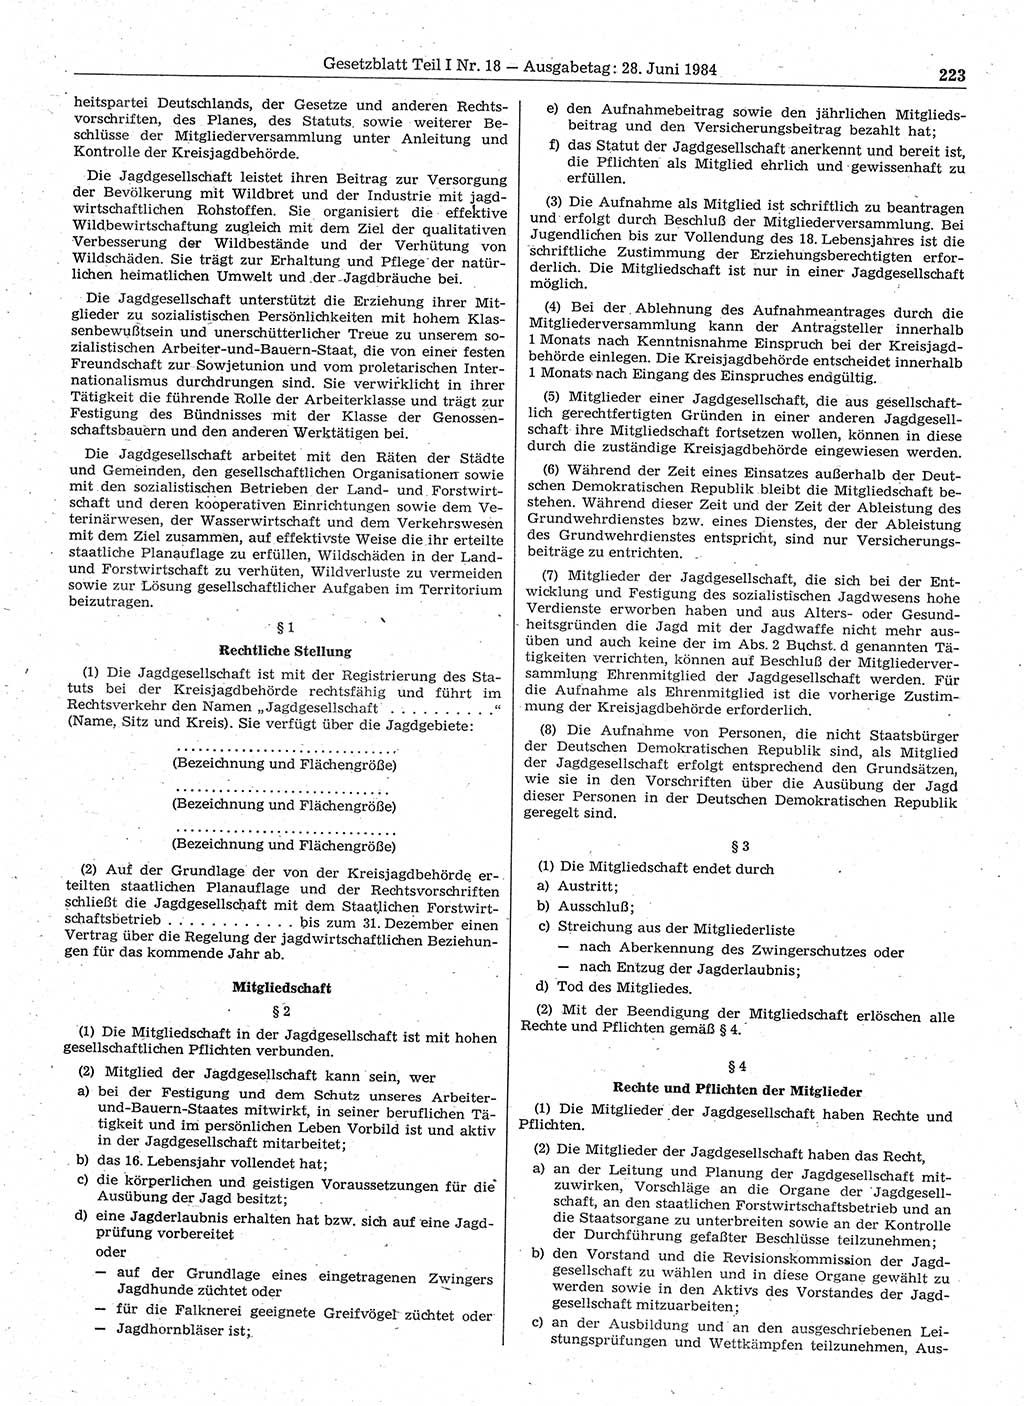 Gesetzblatt (GBl.) der Deutschen Demokratischen Republik (DDR) Teil Ⅰ 1984, Seite 223 (GBl. DDR Ⅰ 1984, S. 223)